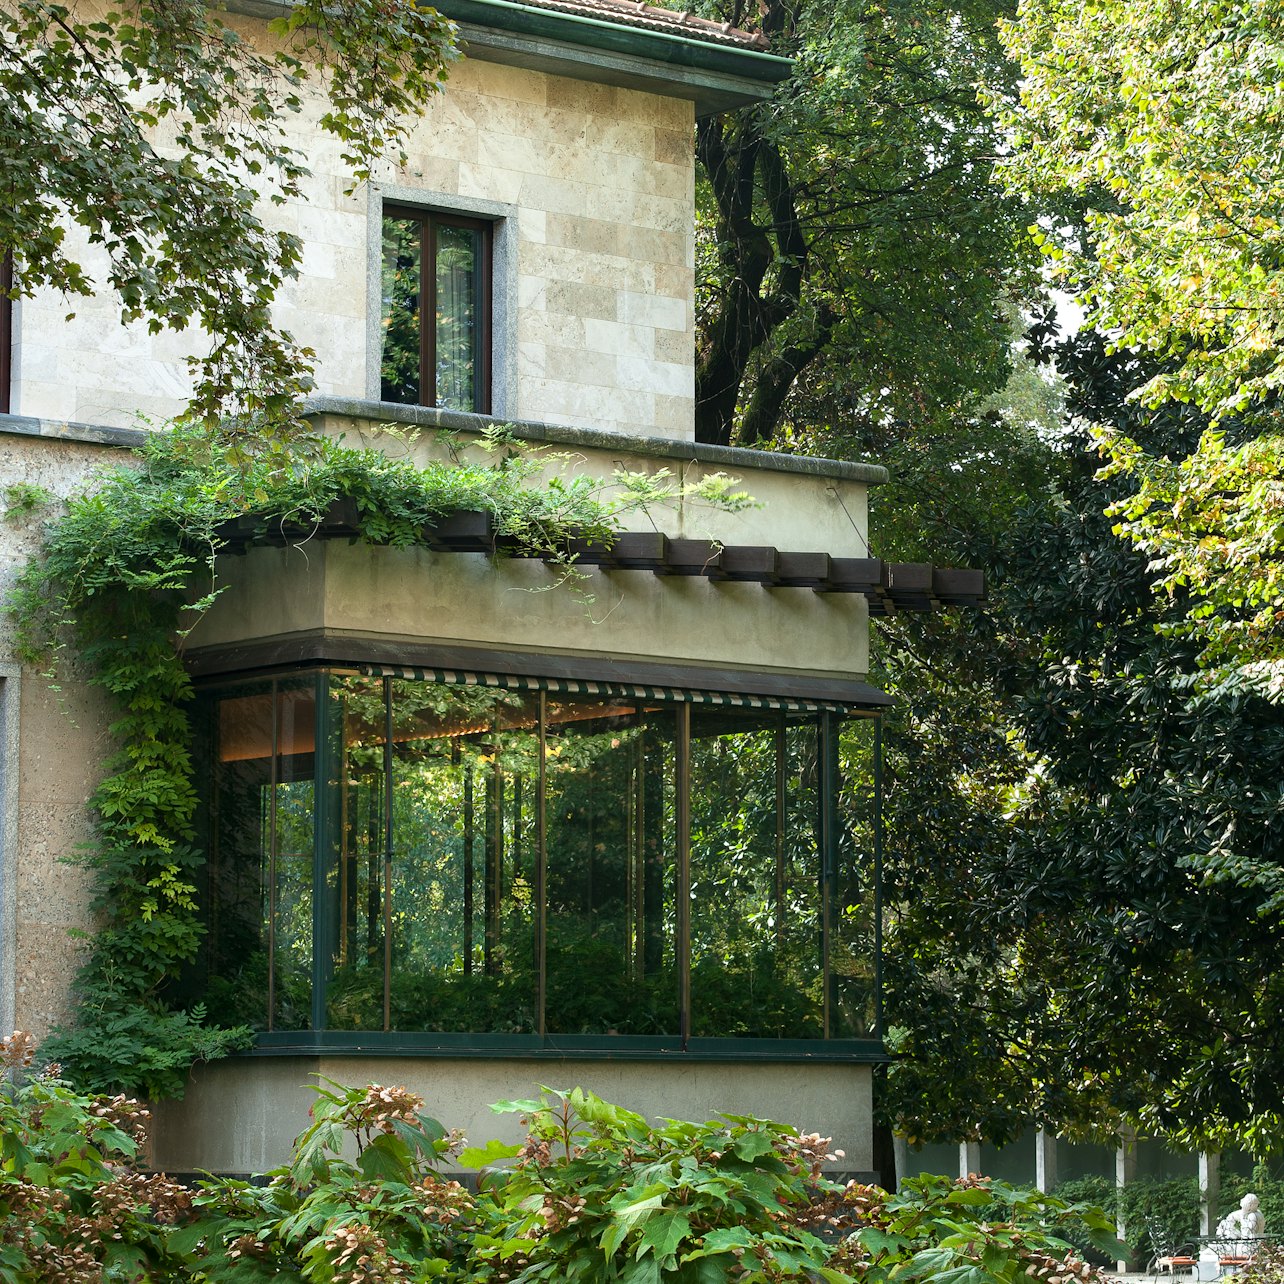 Villa Necchi Campiglio - Alojamientos en Milán